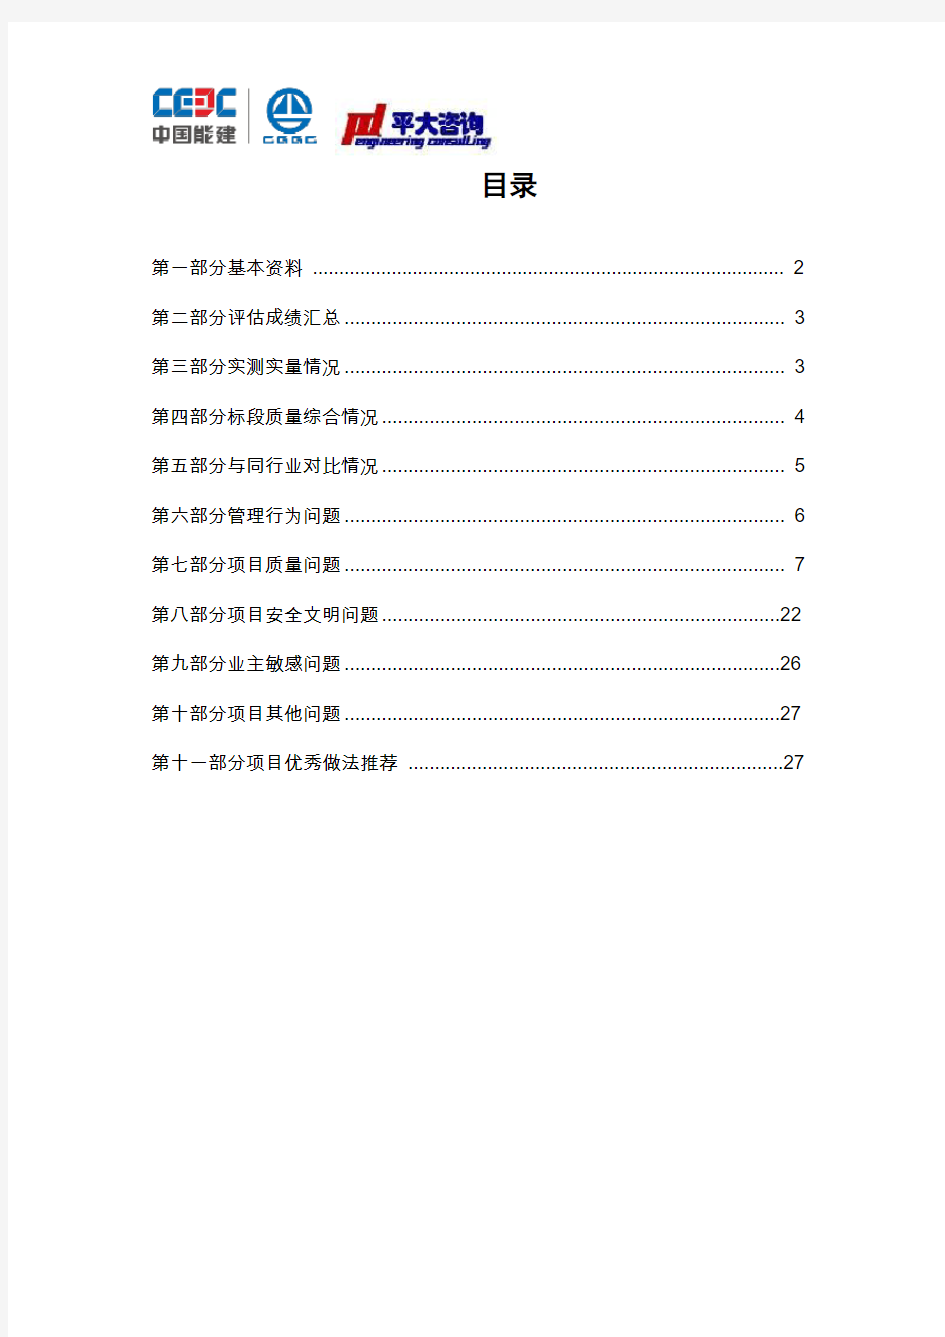 004葛洲坝集团海南海棠福湾项目一标段评估简报20160919